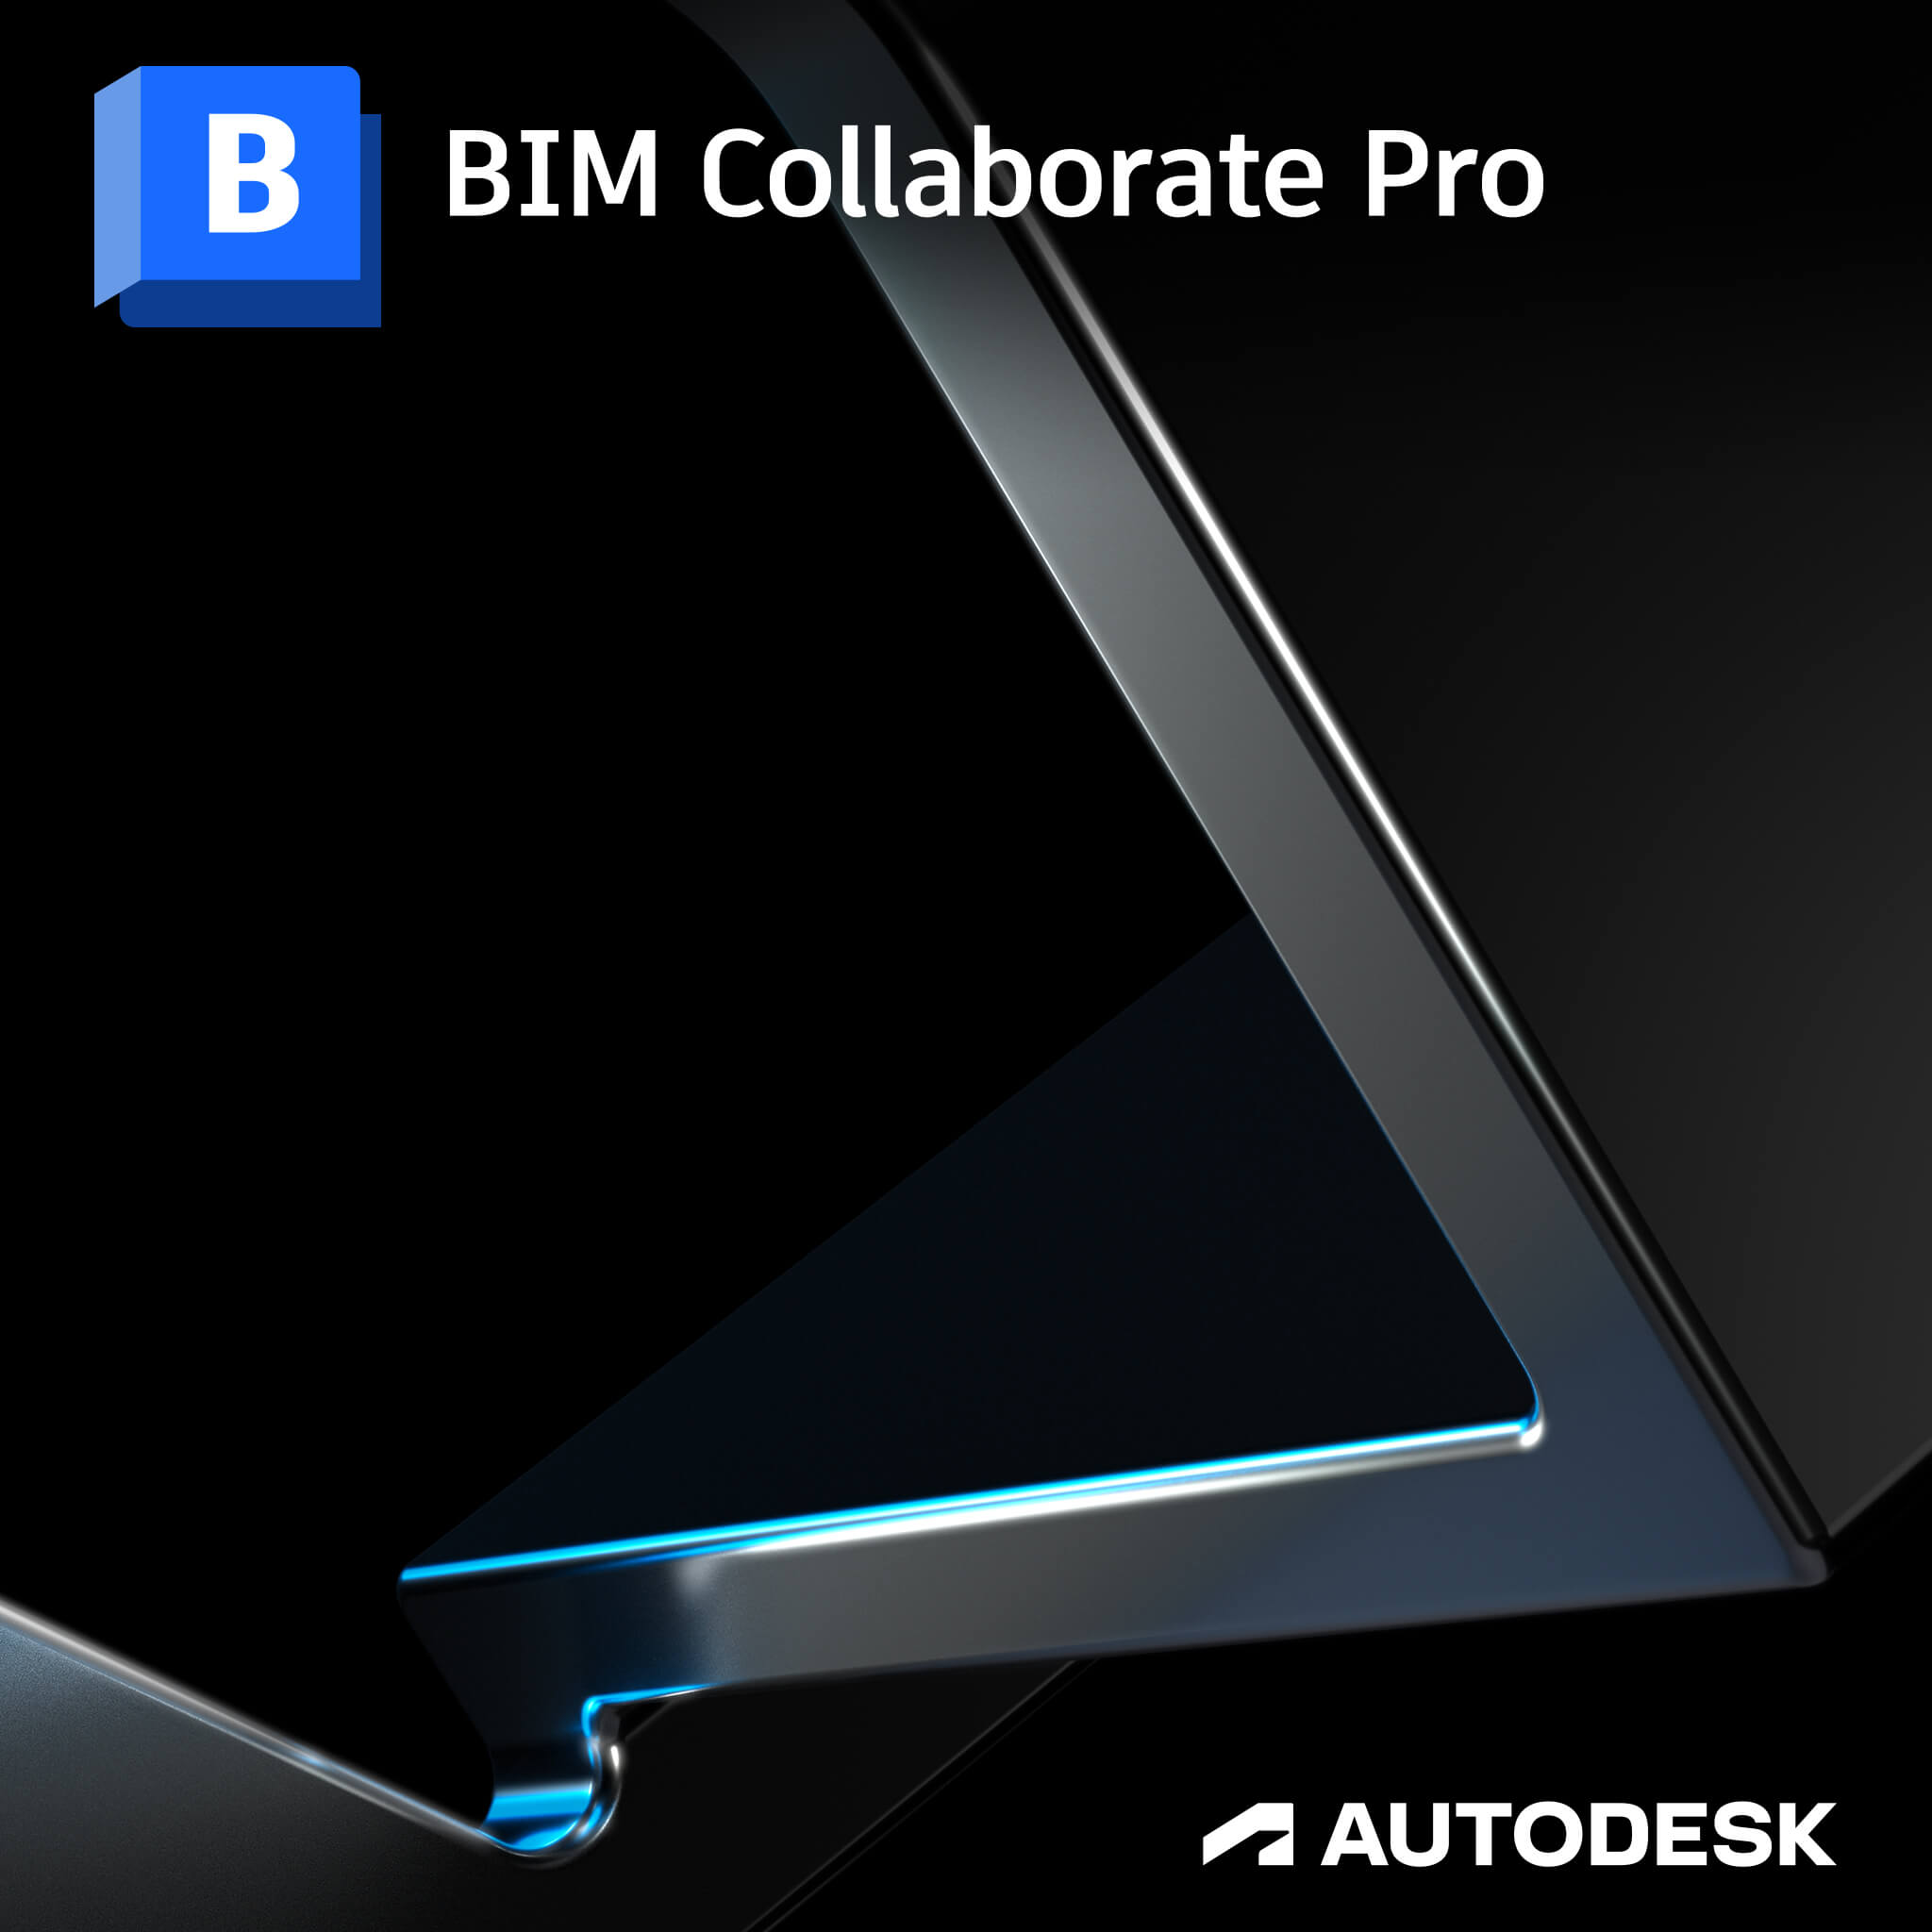 BIM Collaborate Pro